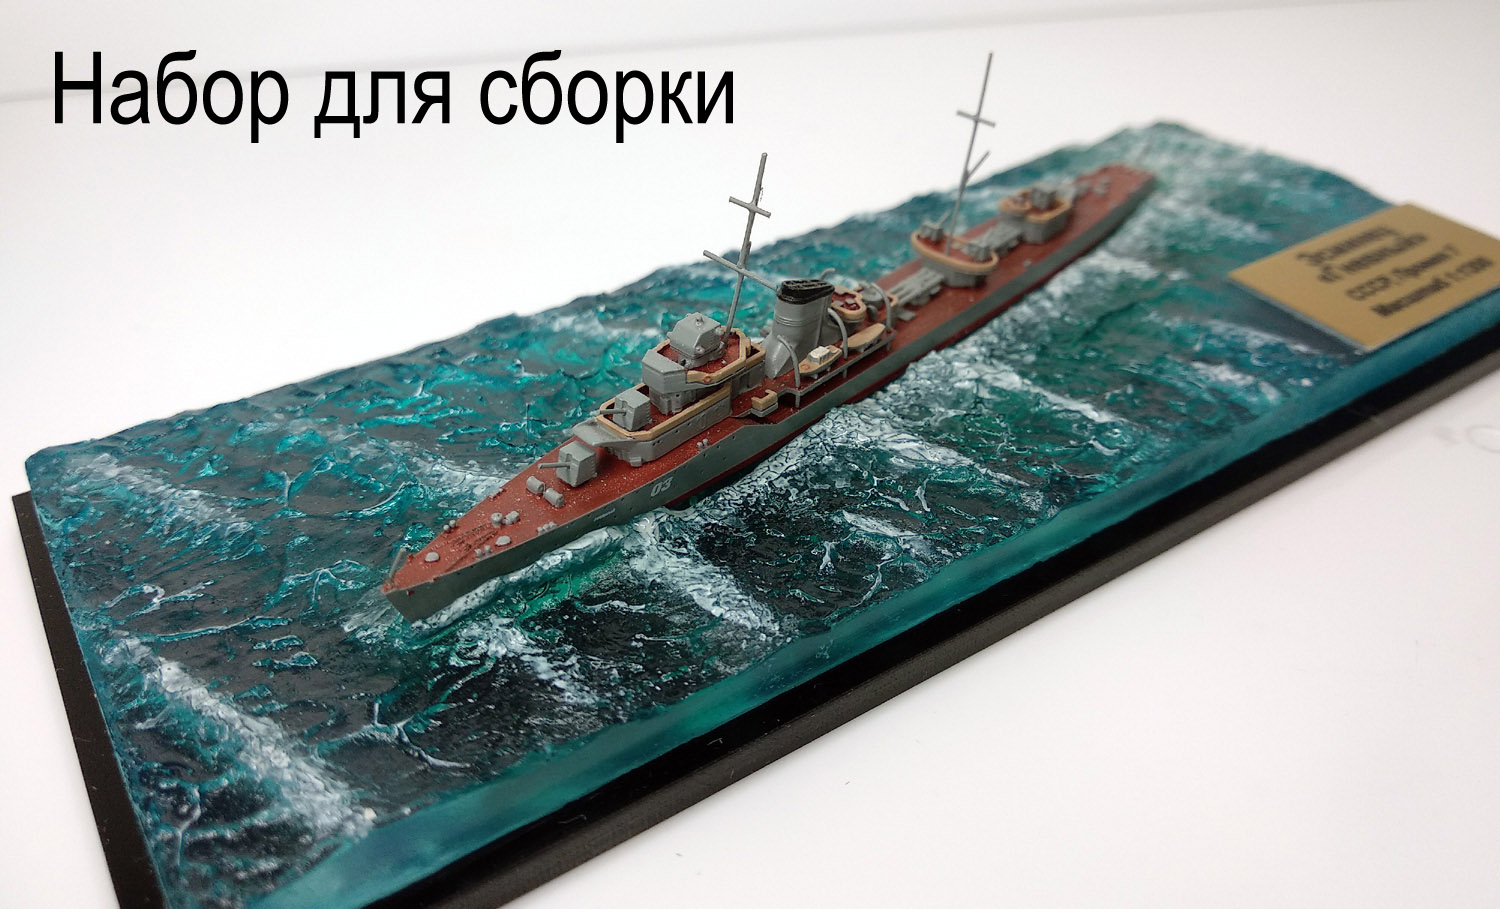 Эсминец Гневный в море (набор для сборки) с основанием и боксом модель в масштабе 1:1200 фото 1